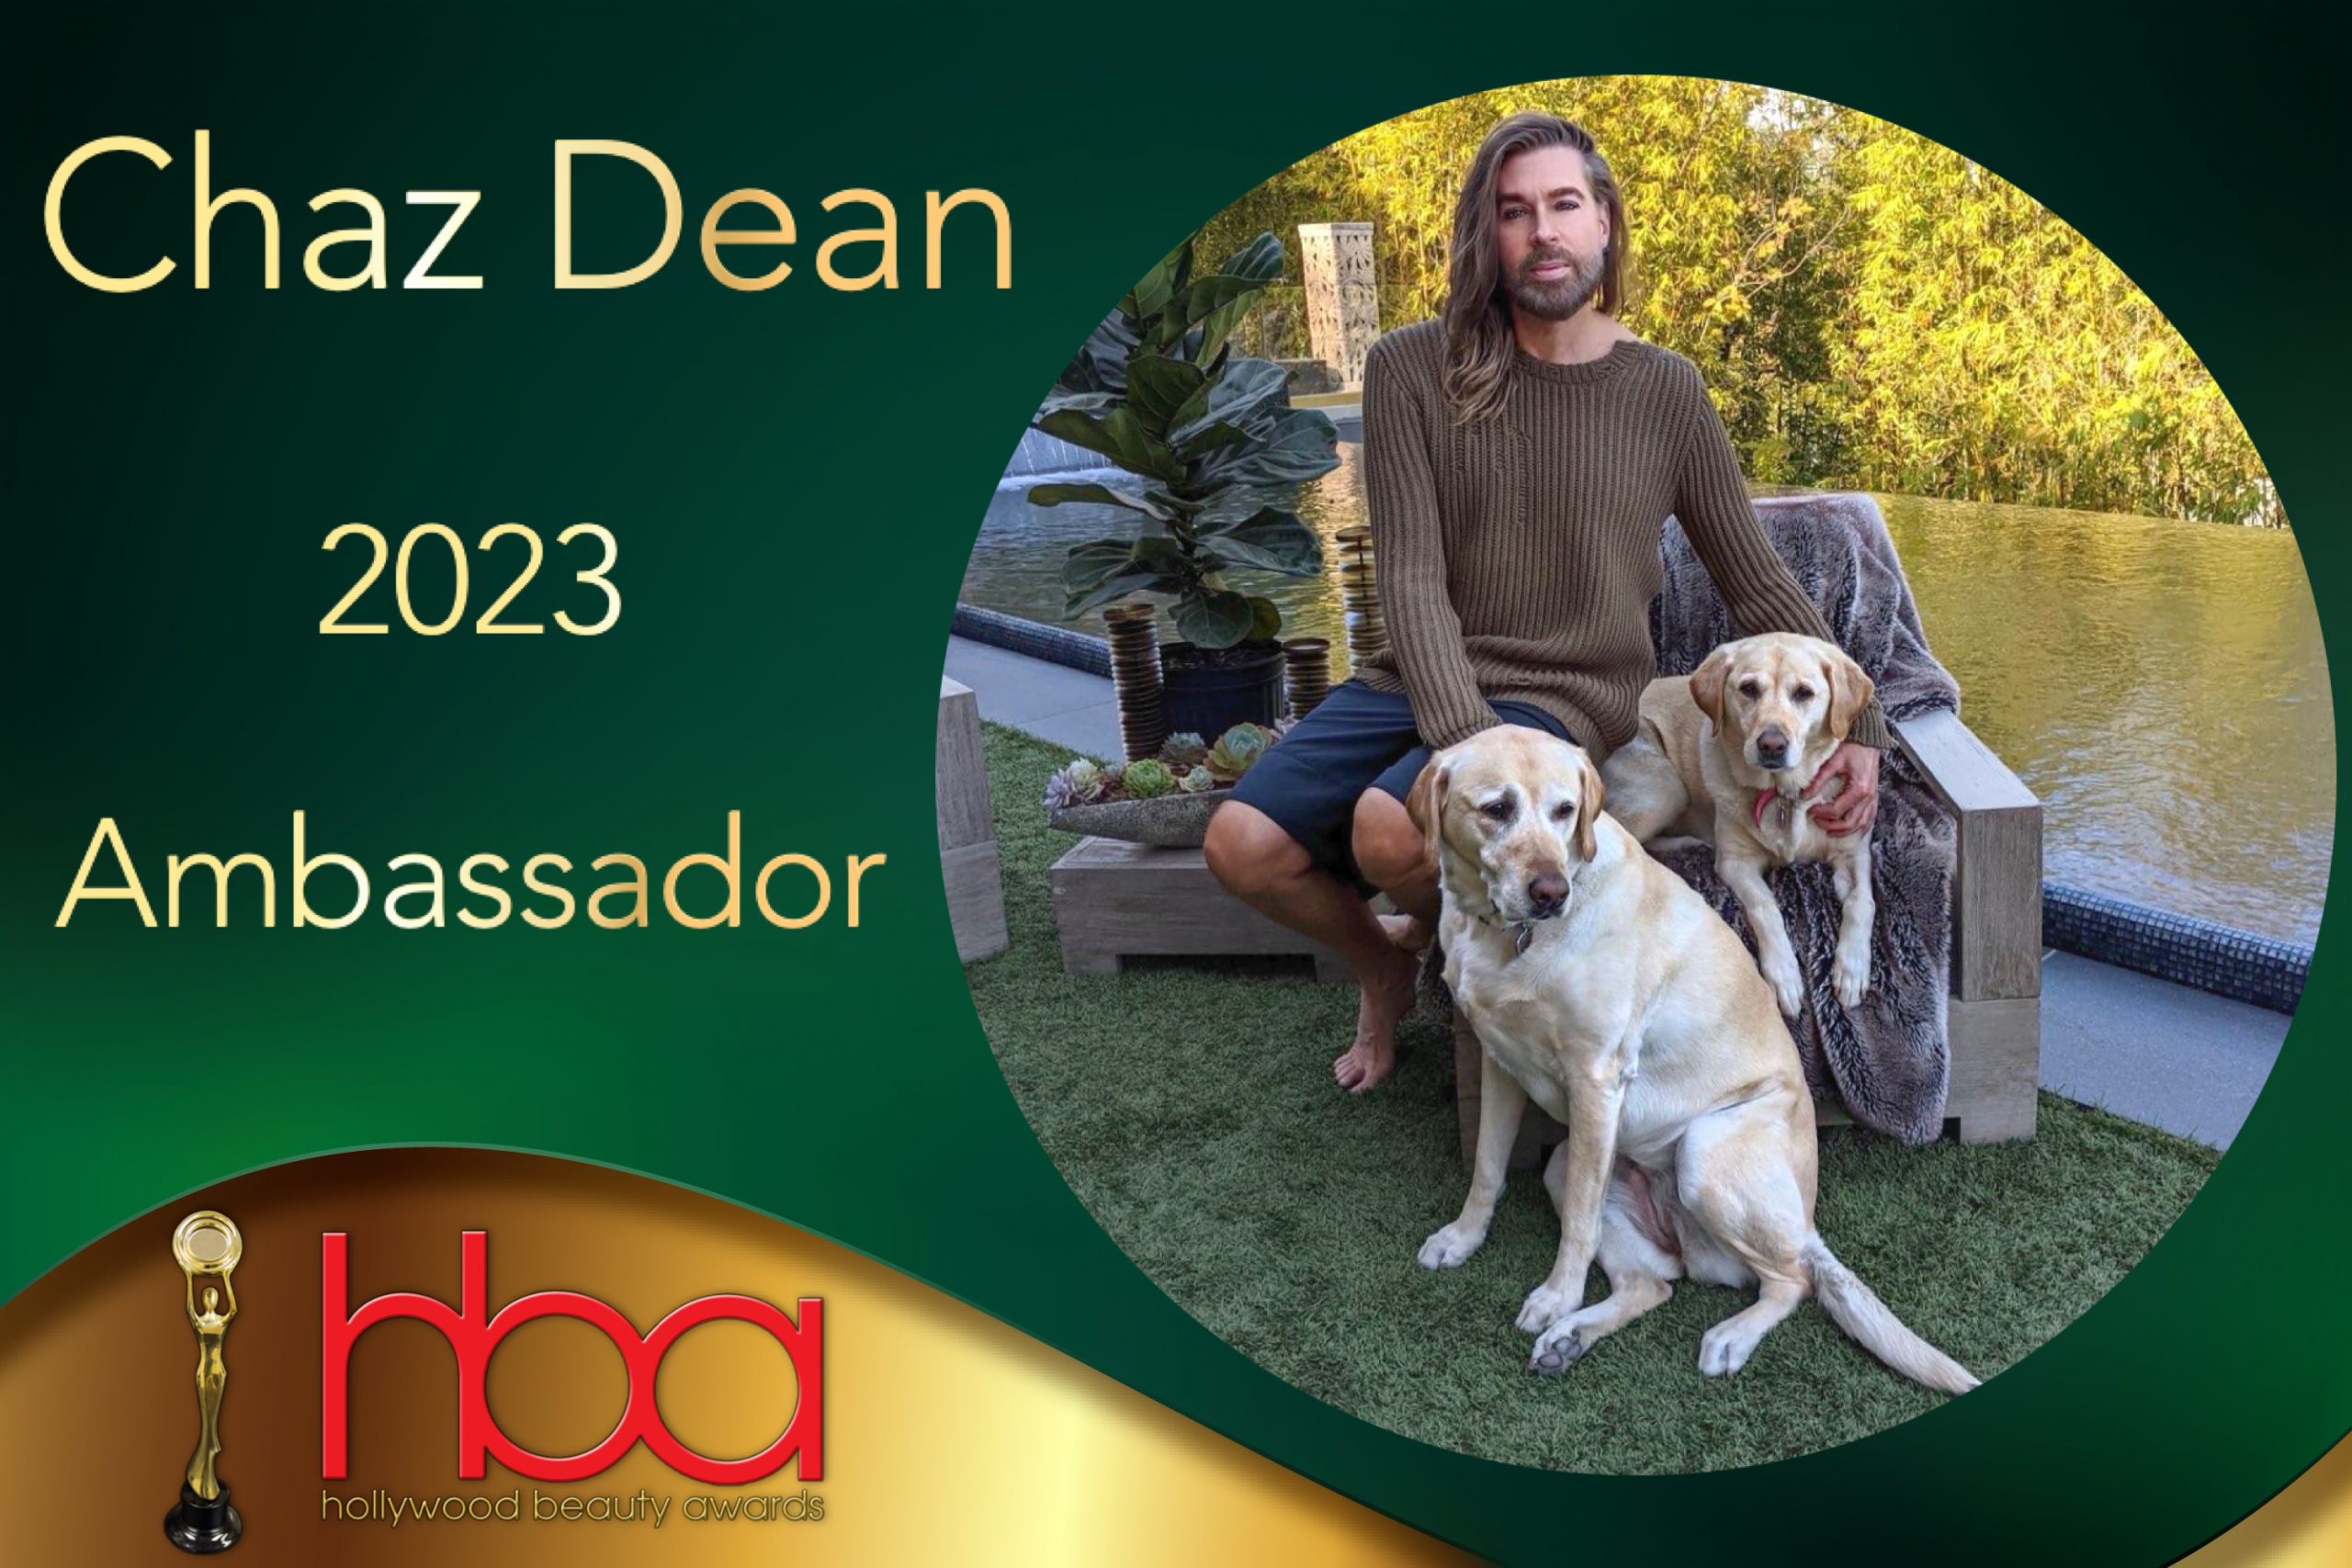 chaz dean, hollywood beauty awards, animal activist